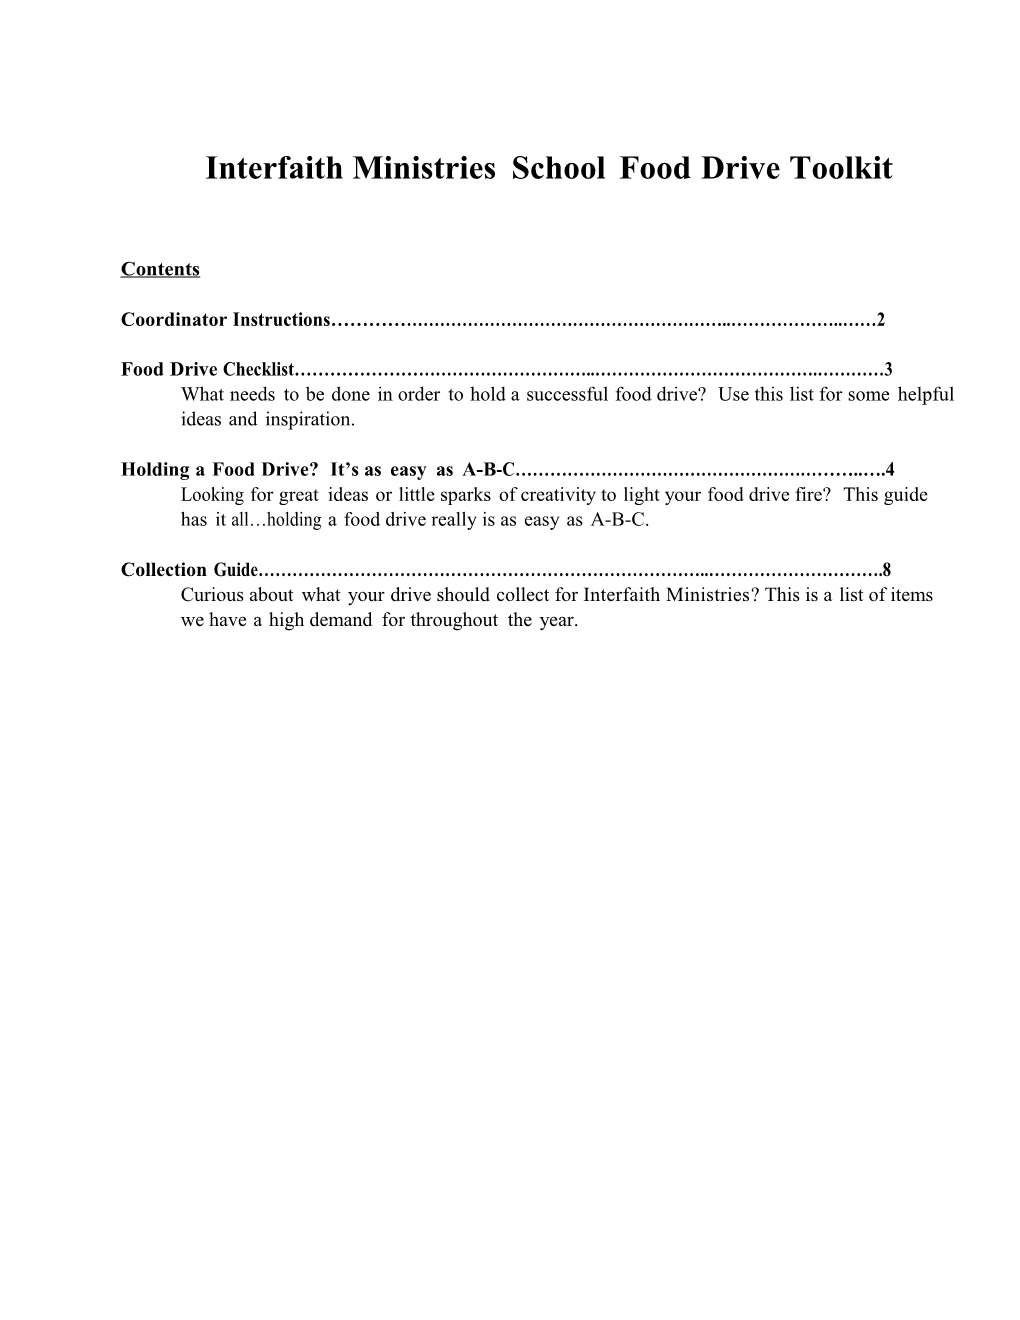 Interfaith Ministriesschoolfooddrivetoolkit